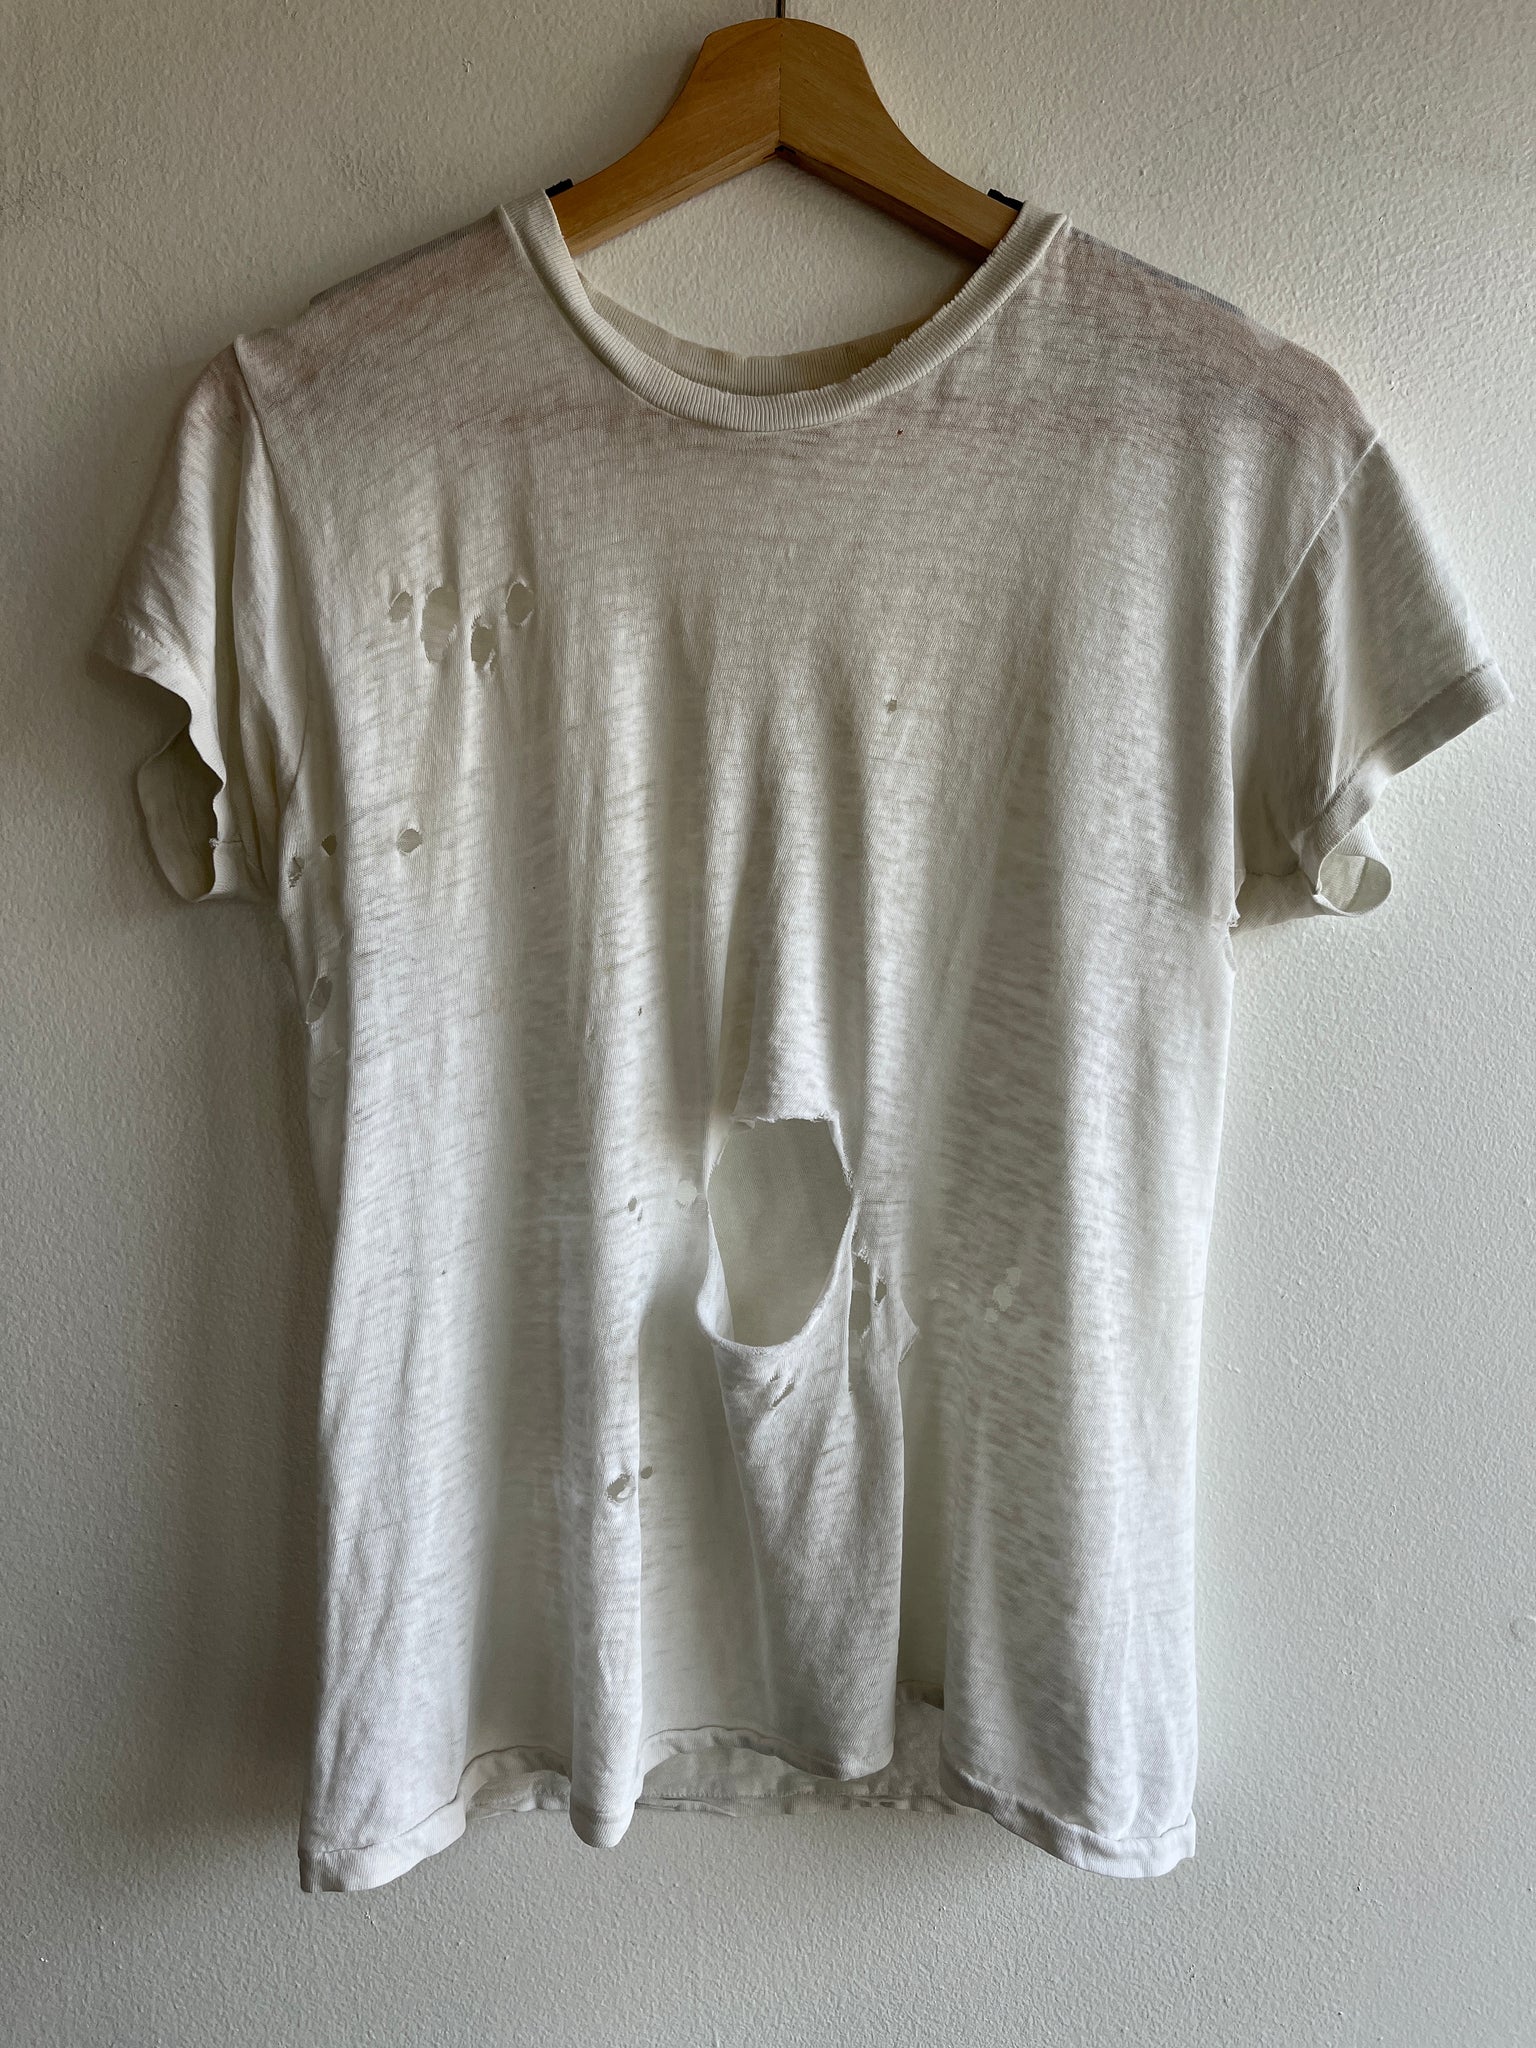 Vintage 1970’s Thrashed T-Shirt